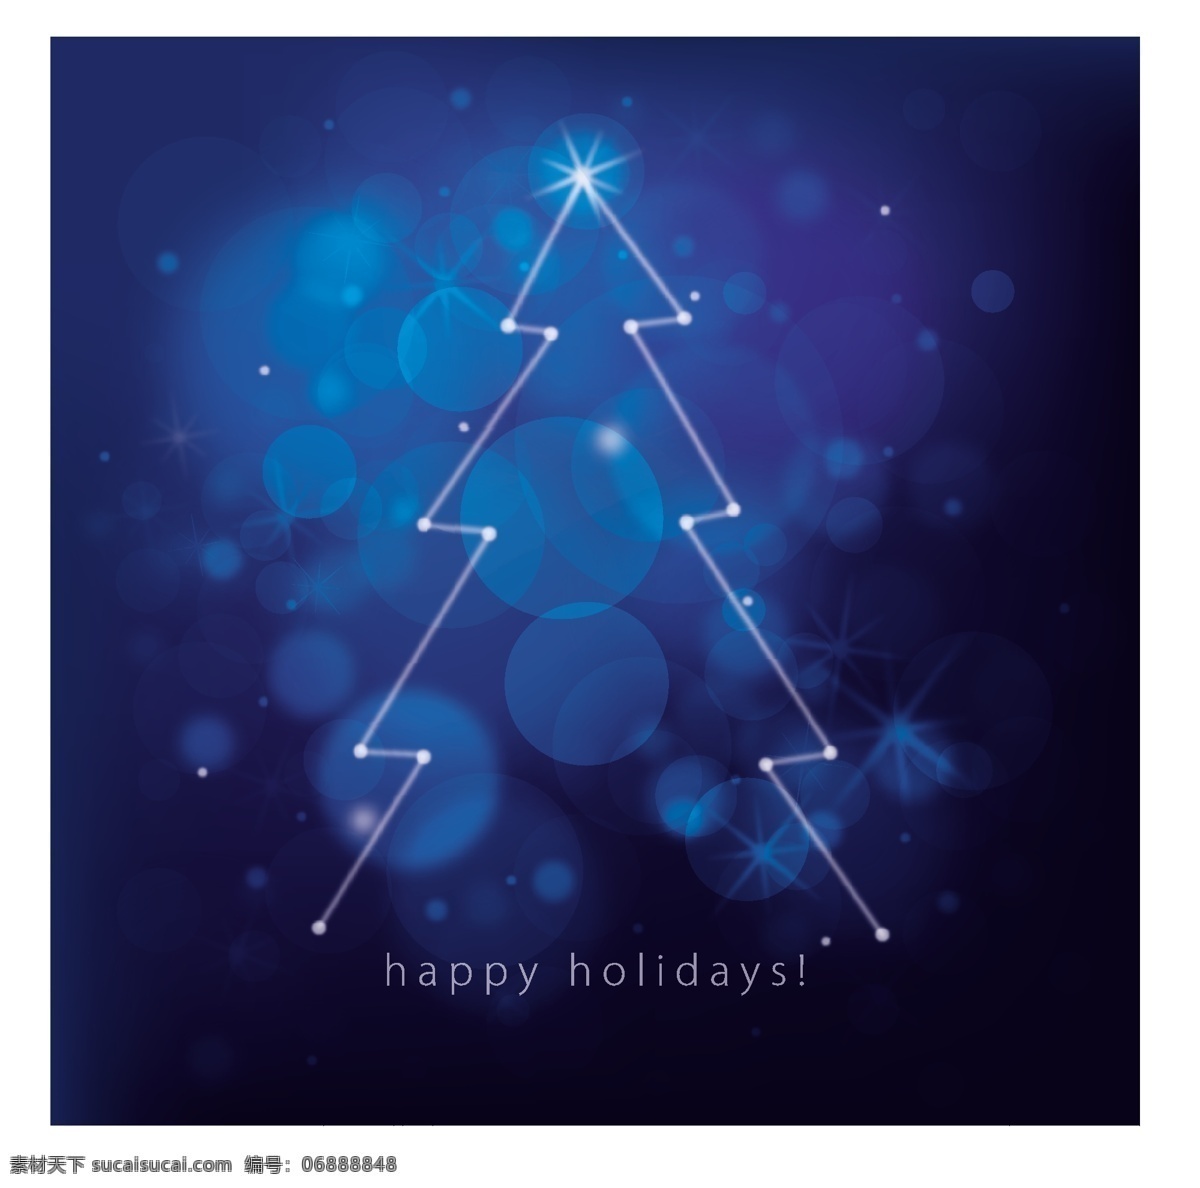 梦幻 圣诞树 背景 蓝色 圣诞 松 晕 矢量图 其他节日